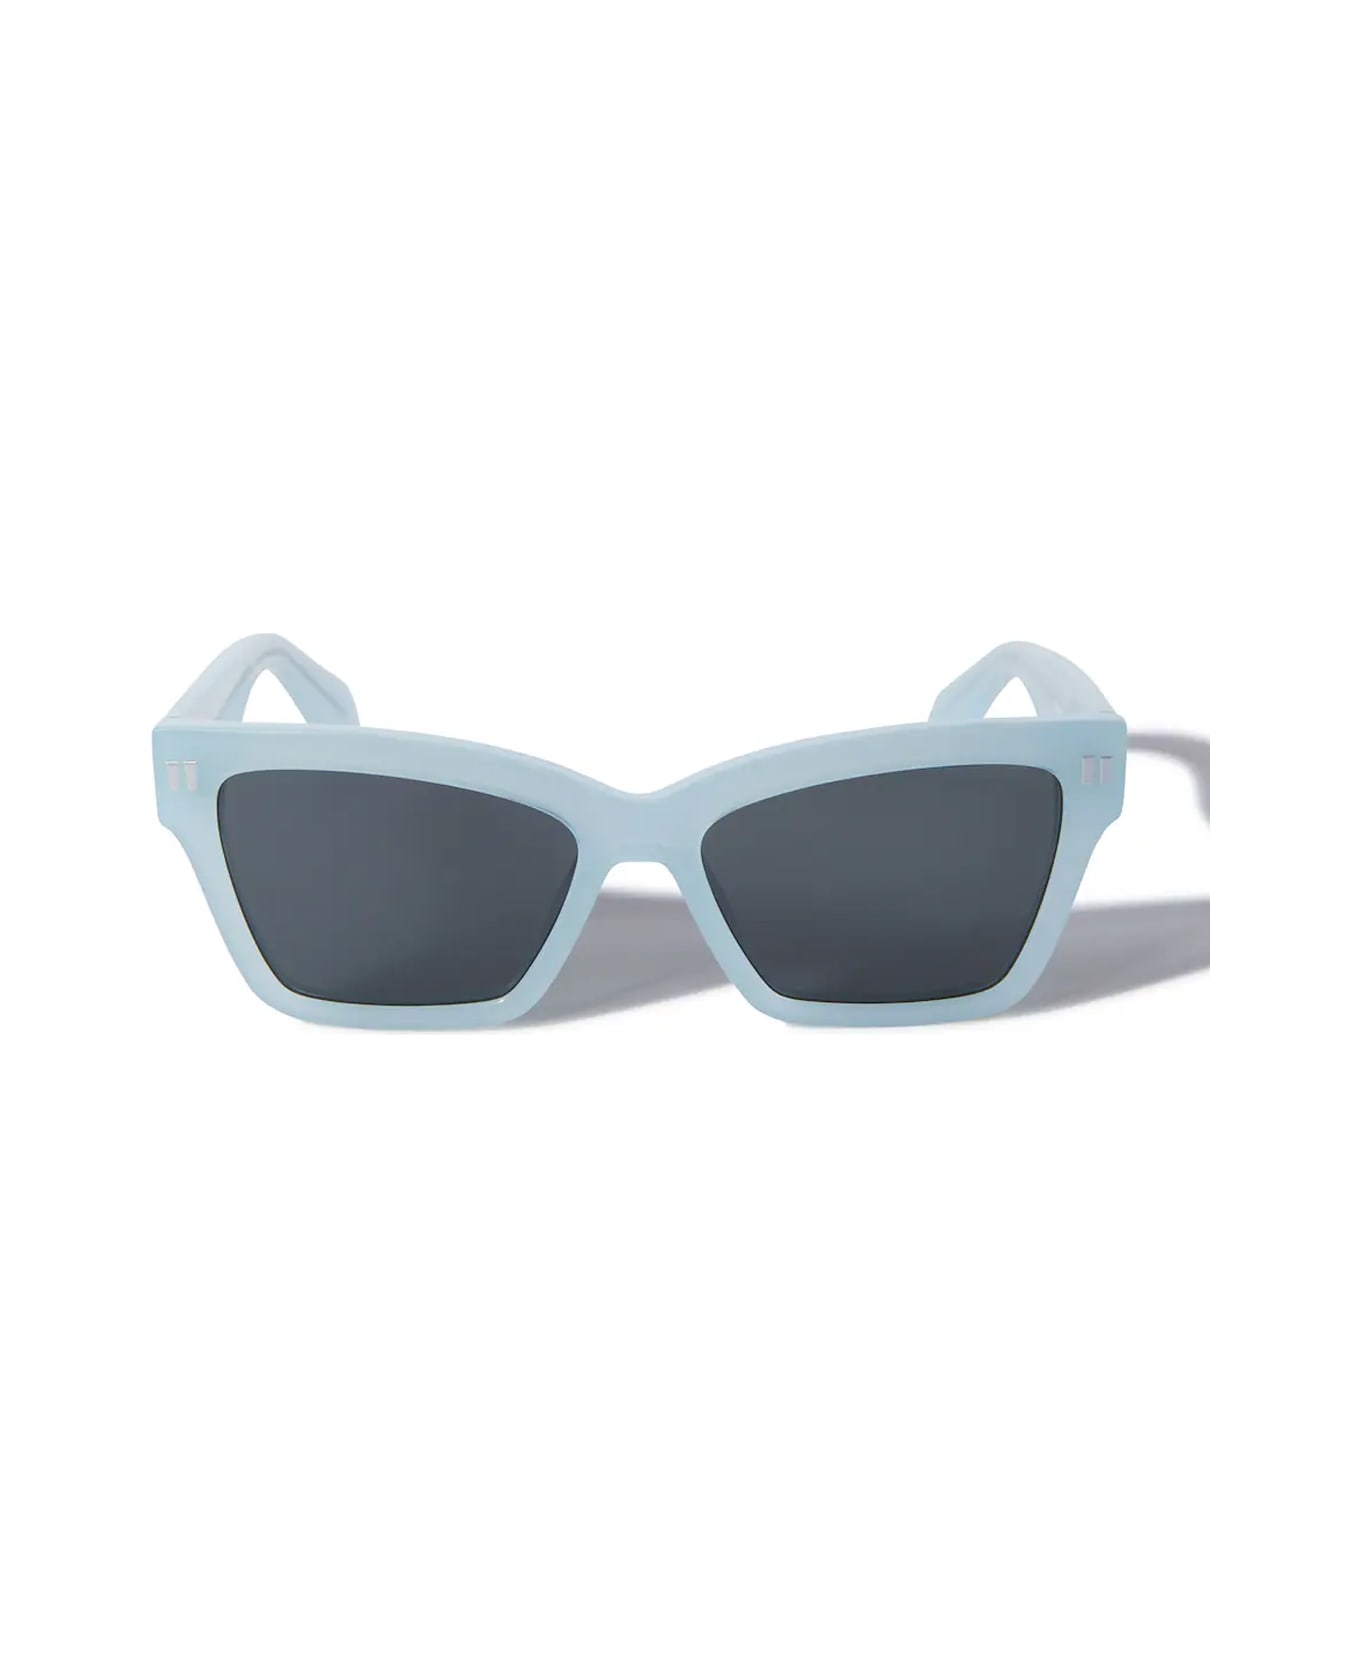 Off-White Oeri110 Cincinnati 4007 Ligh Blue Sunglasses - Blu